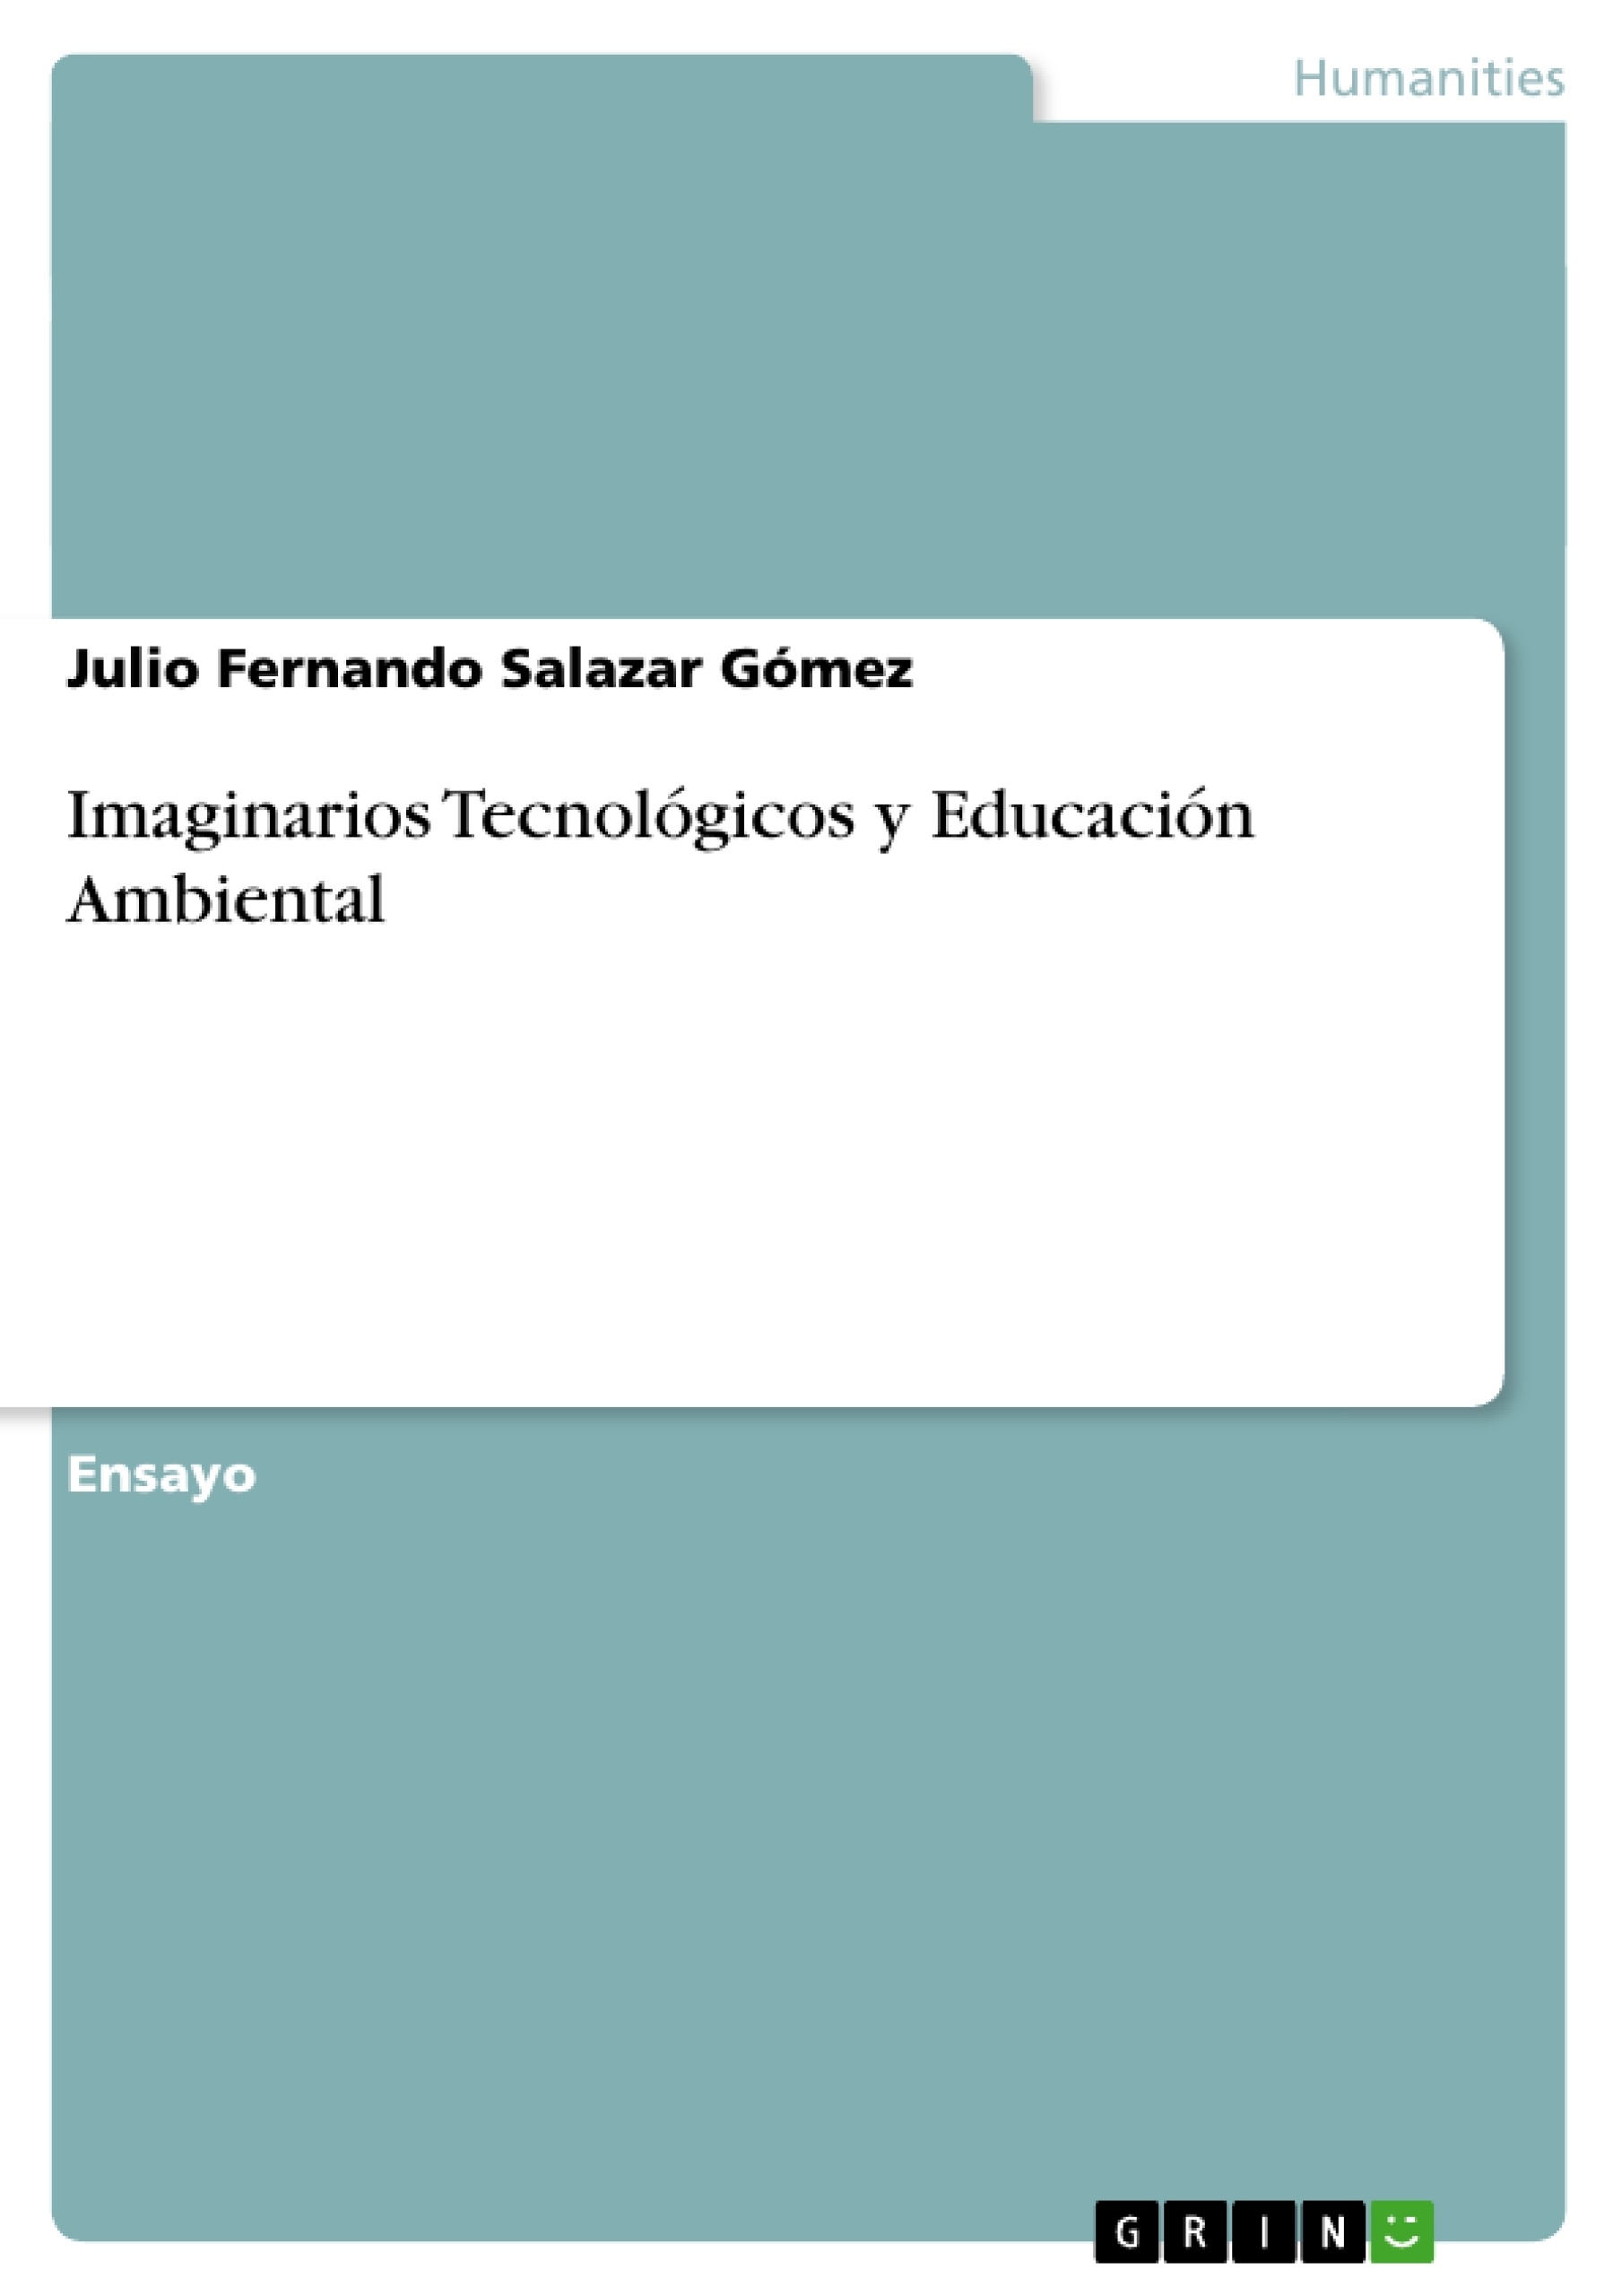 Titel: Imaginarios Tecnológicos y Educación Ambiental